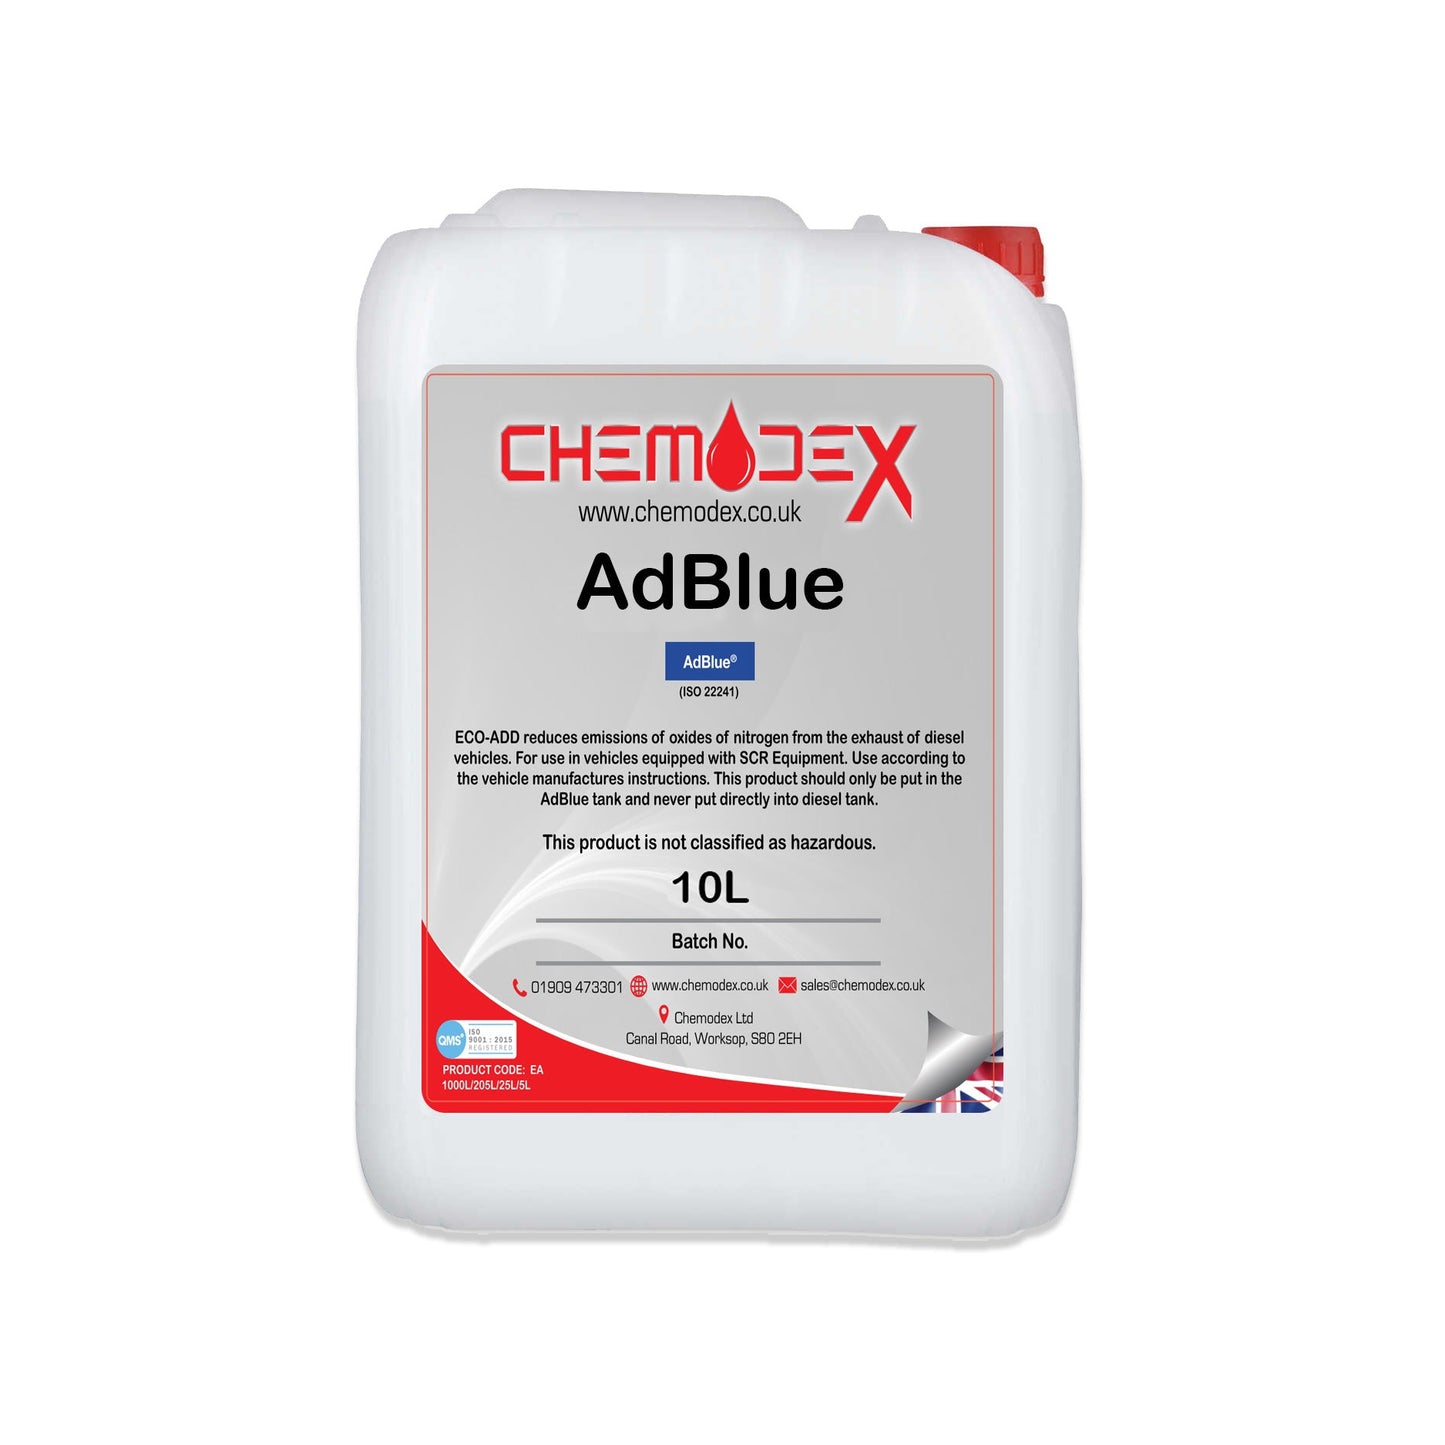 Chemodex Eco-Add Adblue in 10L,20L, 200L and 1000L Euro 5/6 ISO 22241 Compliant